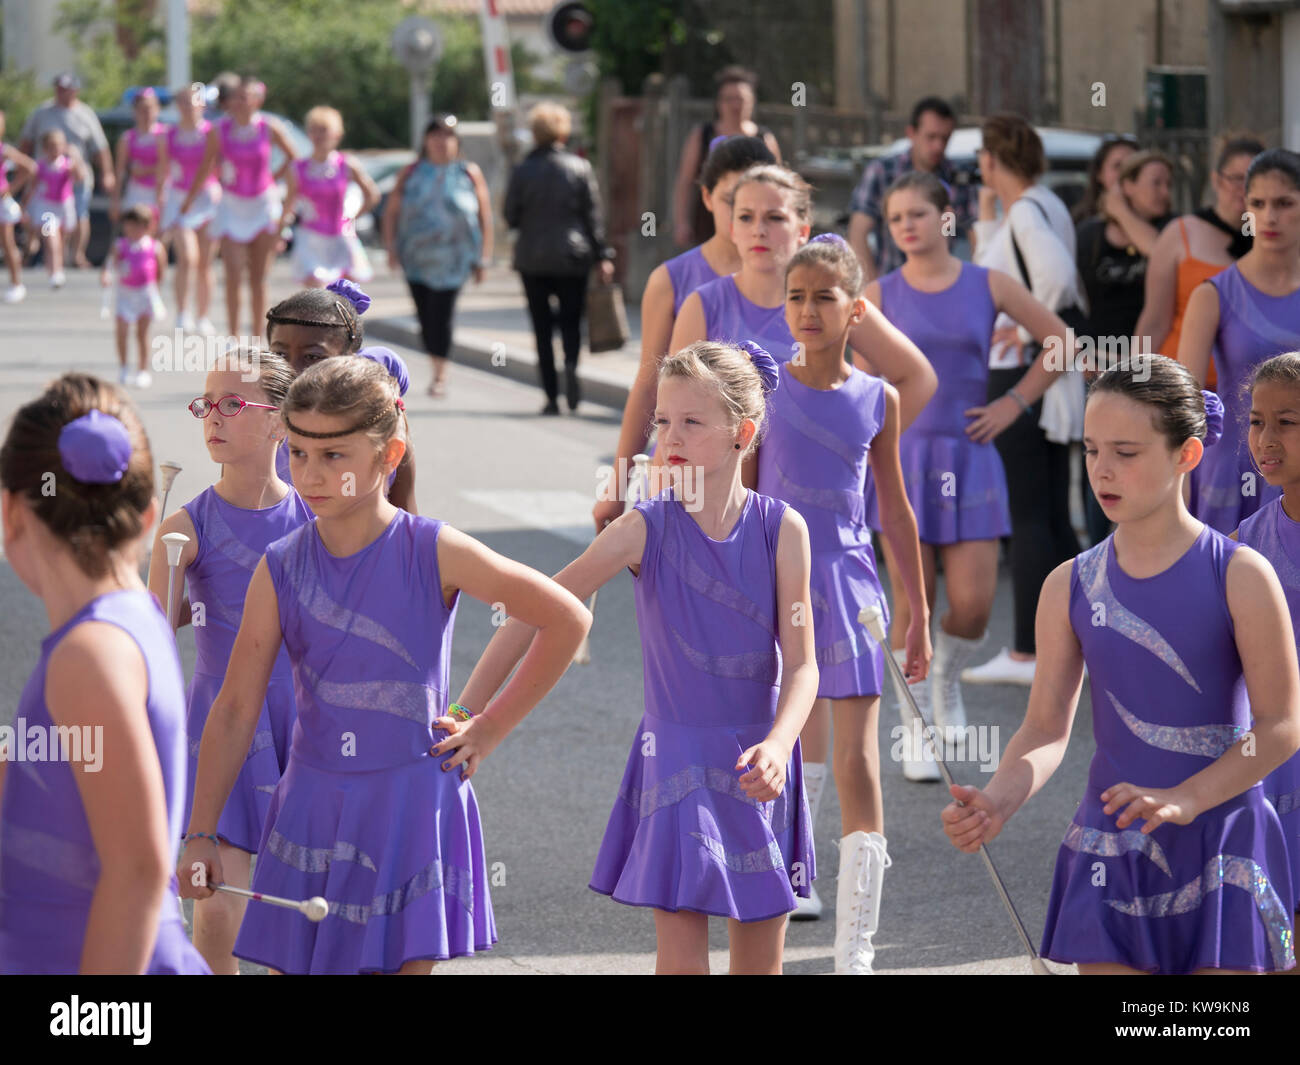 Les jeunes filles cheerleaders sur le défilé à Bram, dans le sud de la France Banque D'Images